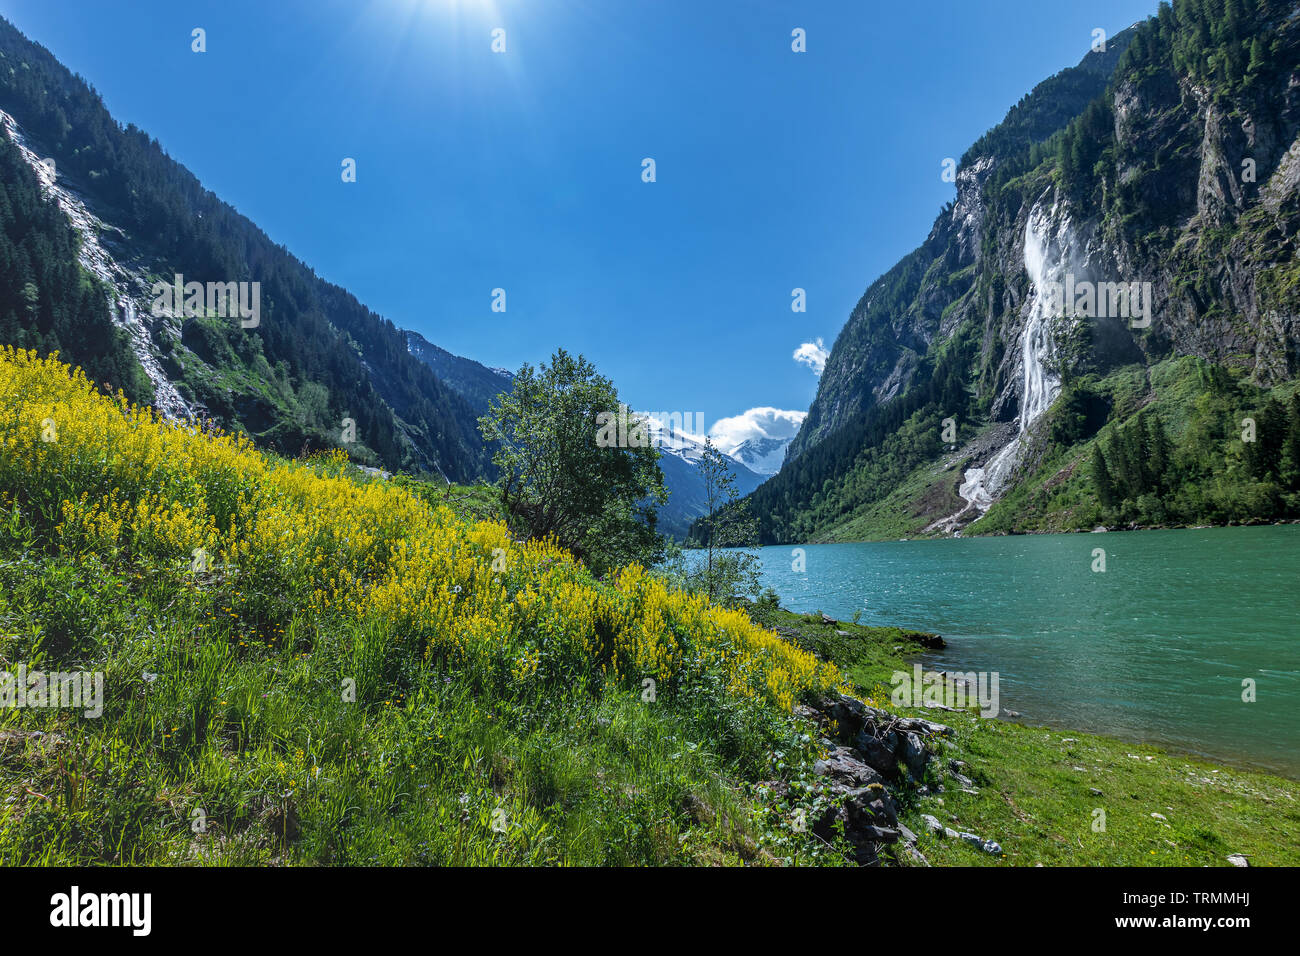 Paysage alpin avec d'été lac de montagne. Stillup, Stillup Lake, l'Autriche, Tirol Banque D'Images